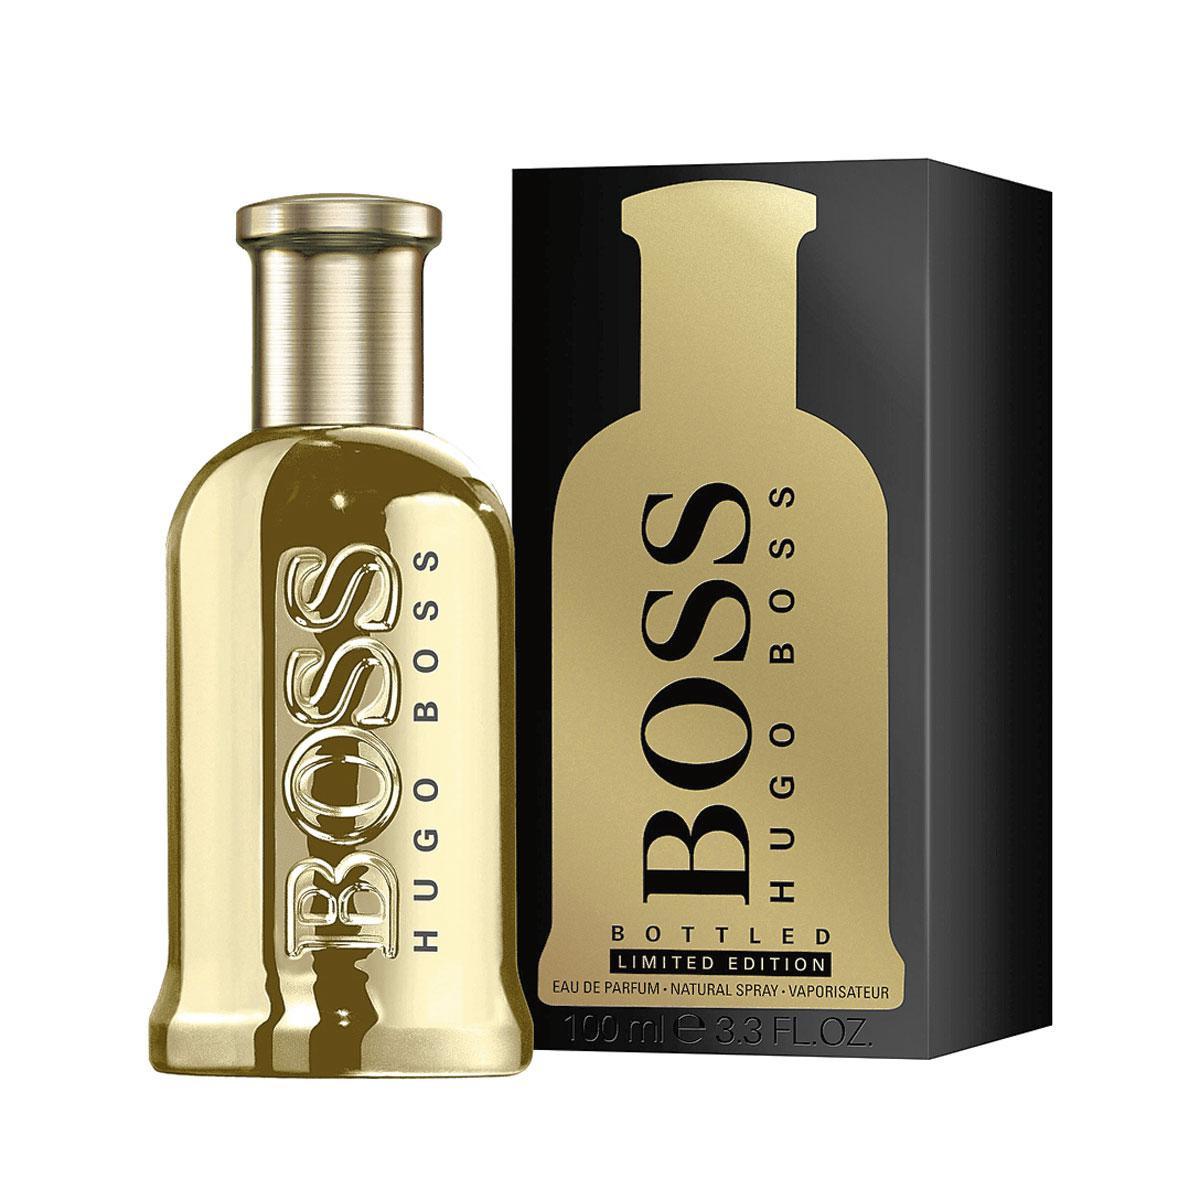 Een frisse houtgeur die erg in de smaak valt bij mannen. Een ideaal lastminutegeschenk! Eau de parfum Boss Bottled, Gold Limited Edition, 93 euro voor 100 ml.